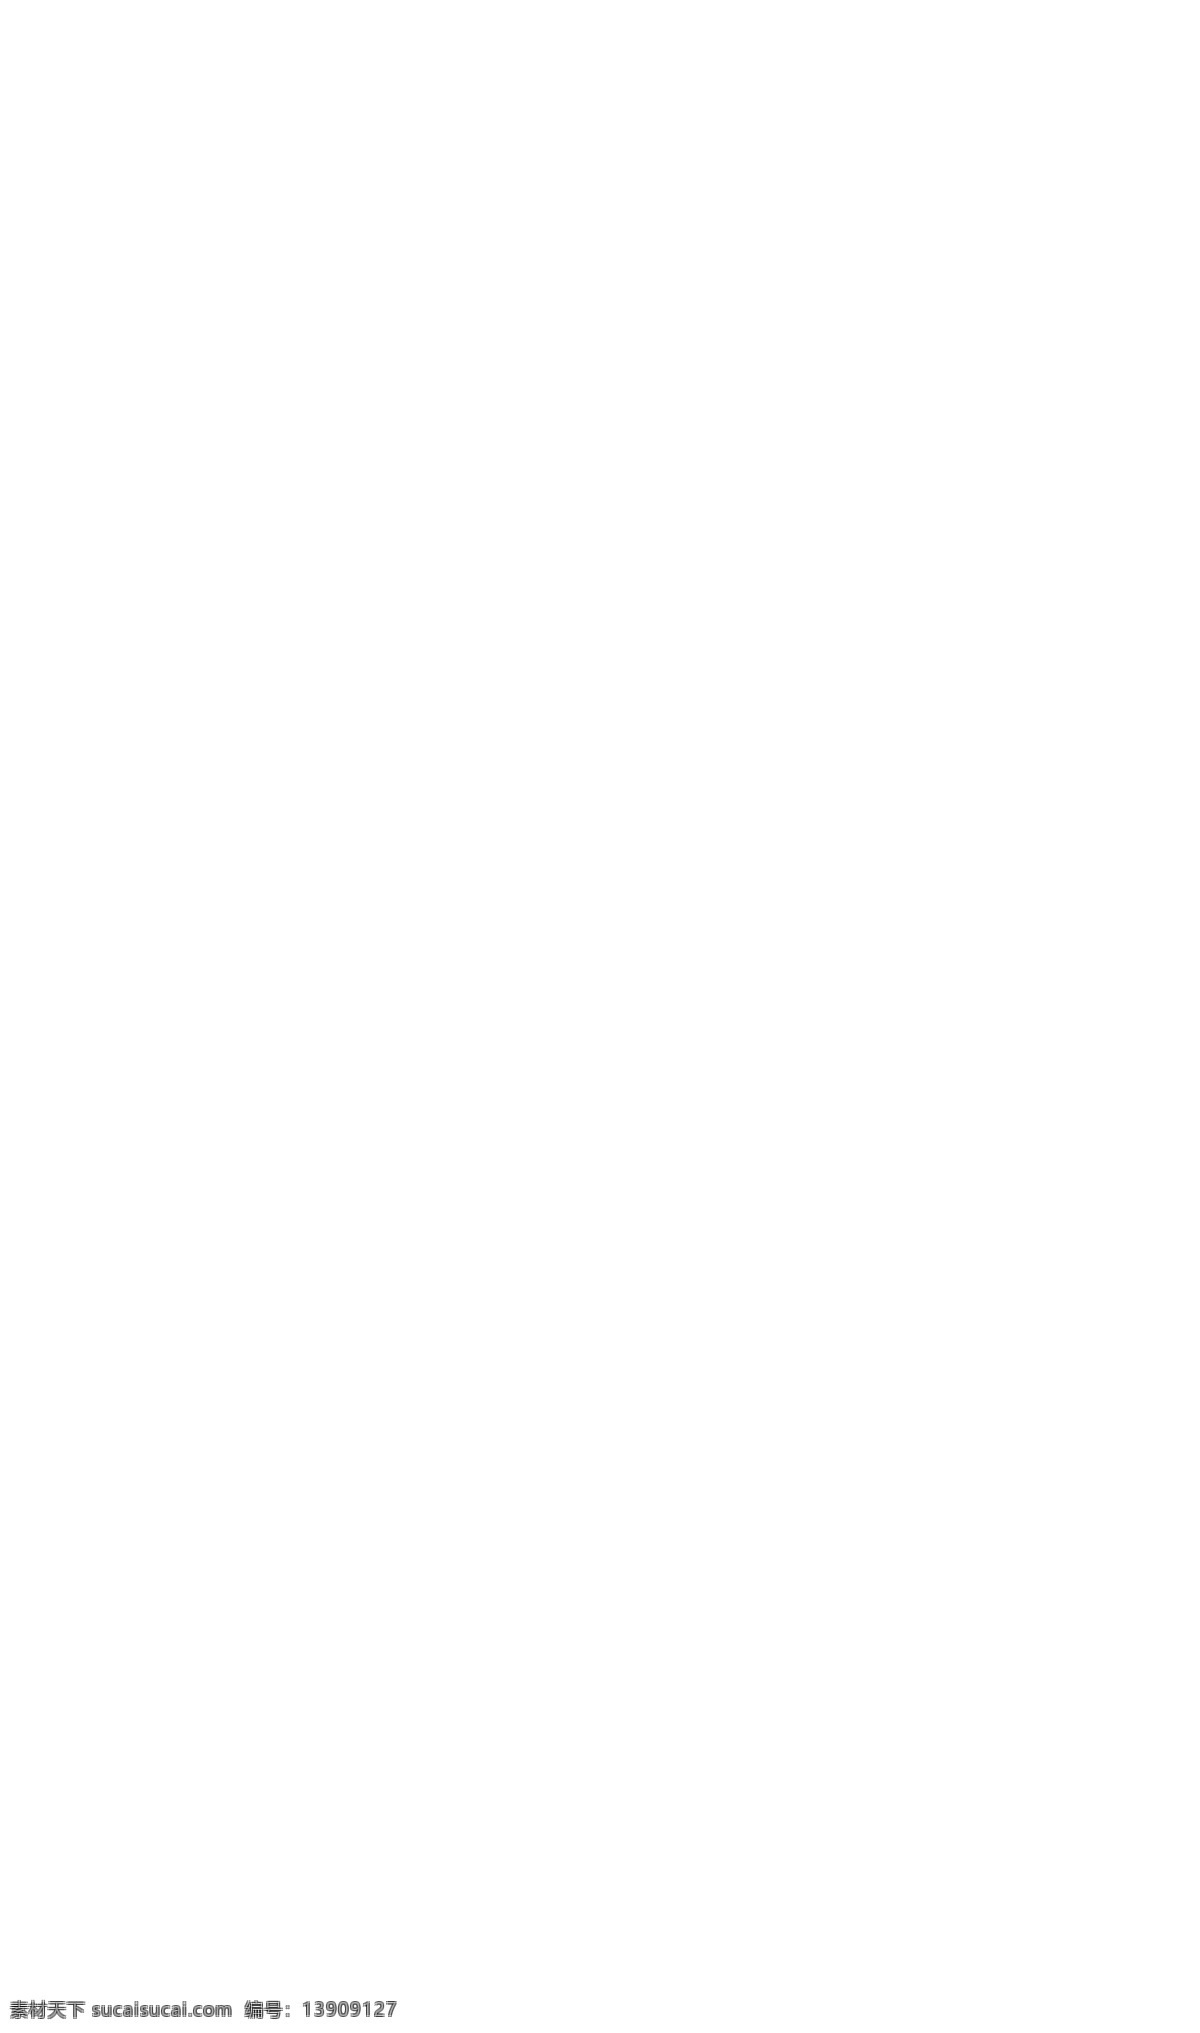 网页设计 psd样式 psd图片 ps ps软件文件 web web网页 web文件 web样式 网页psd 网页样式 网页样式模板 网页模板 网页 网站 韩式网站 韩版样式网站 蓝色互联网 互联网网站 科技网站模板 互联网科技